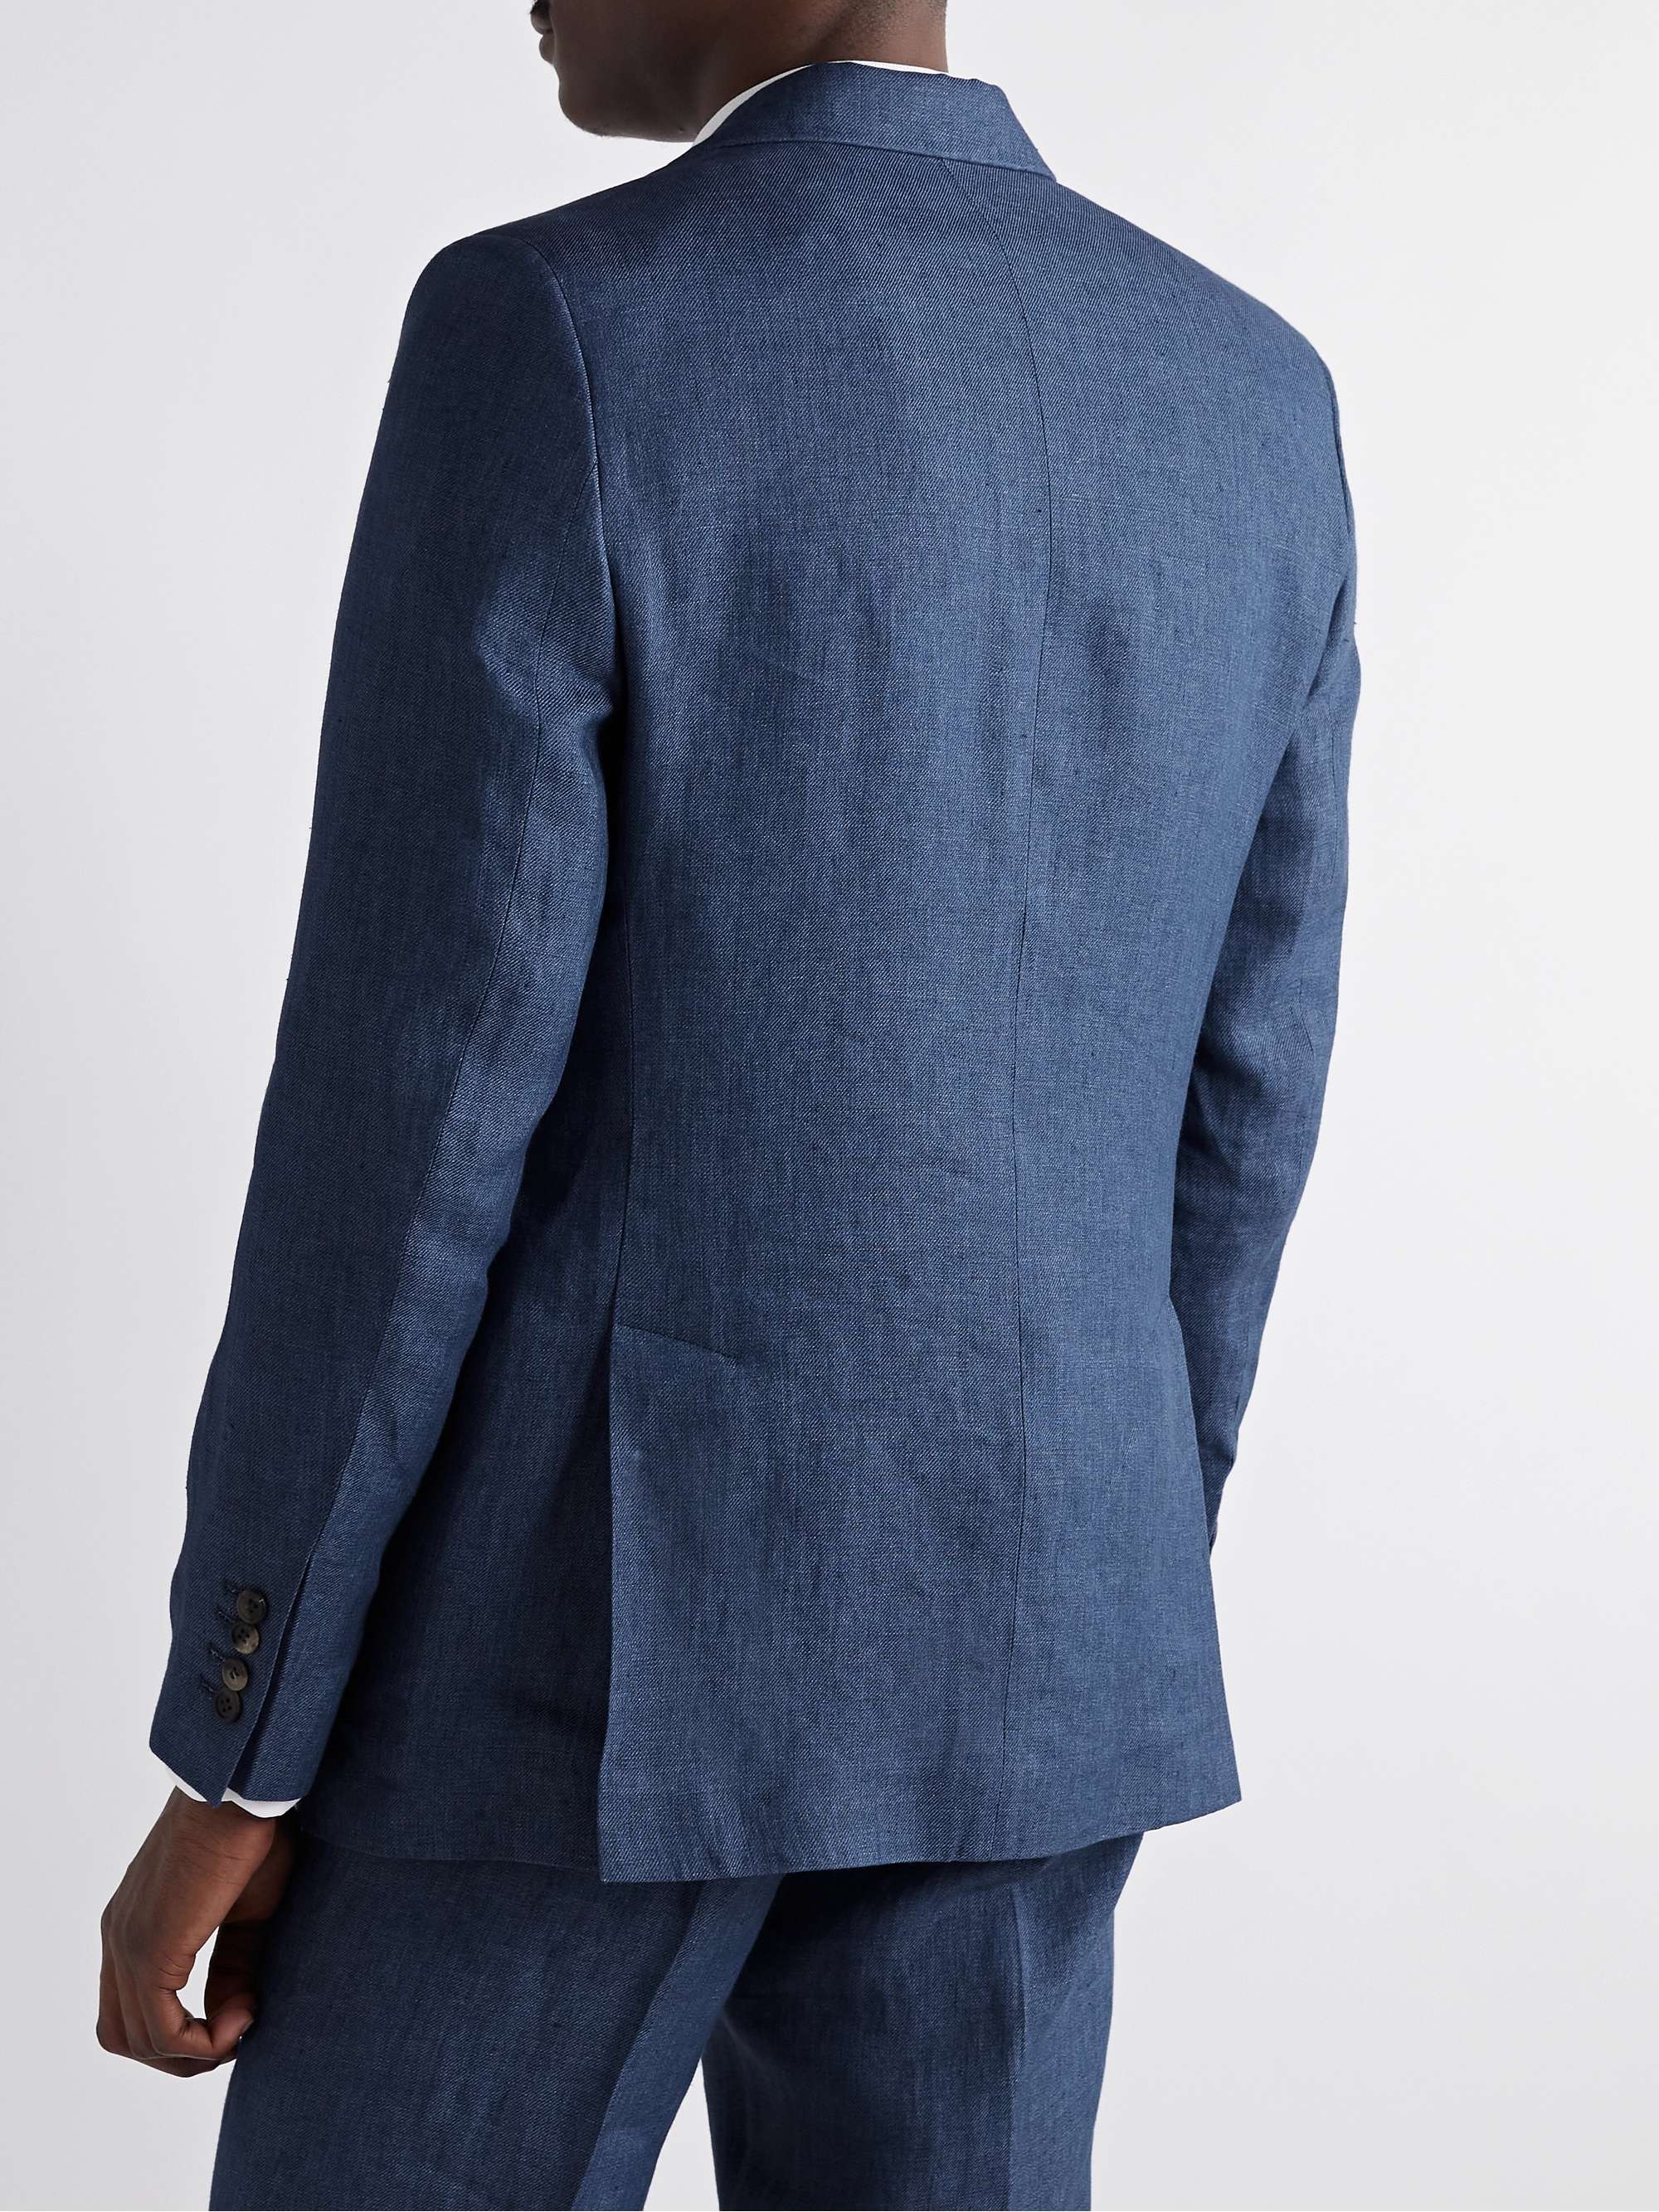 FAVOURBROOK Ebury Slim-Fit Linen Suit Jacket